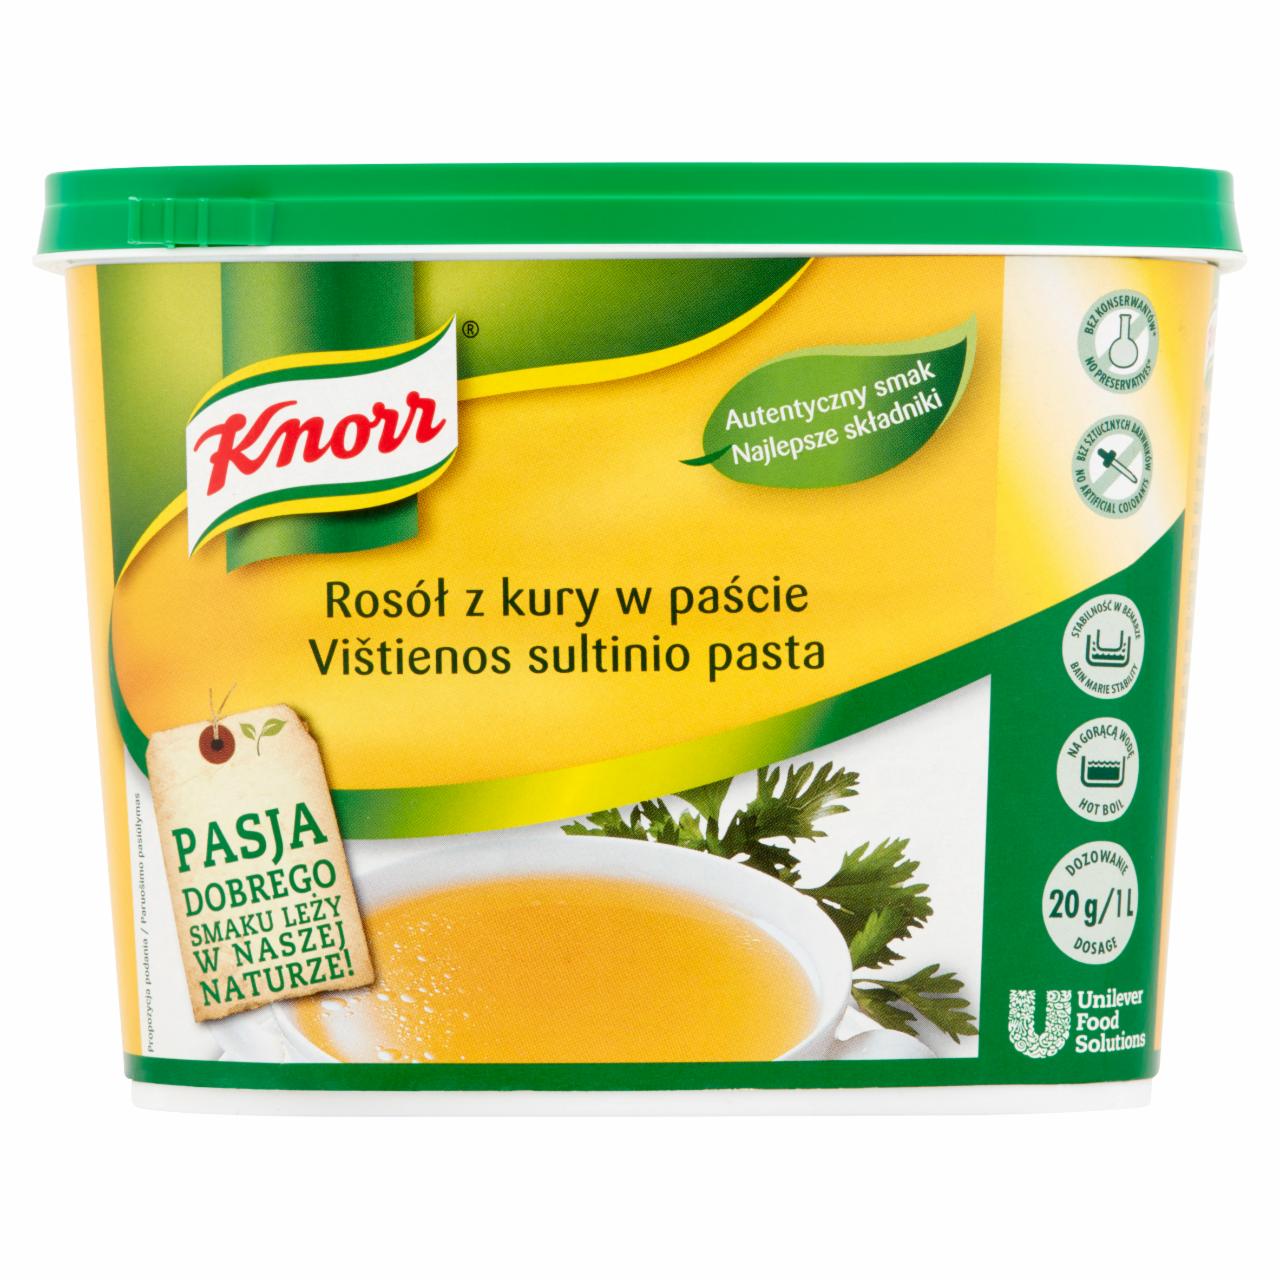 Zdjęcia - Knorr Rosół z kury w paście 1 kg